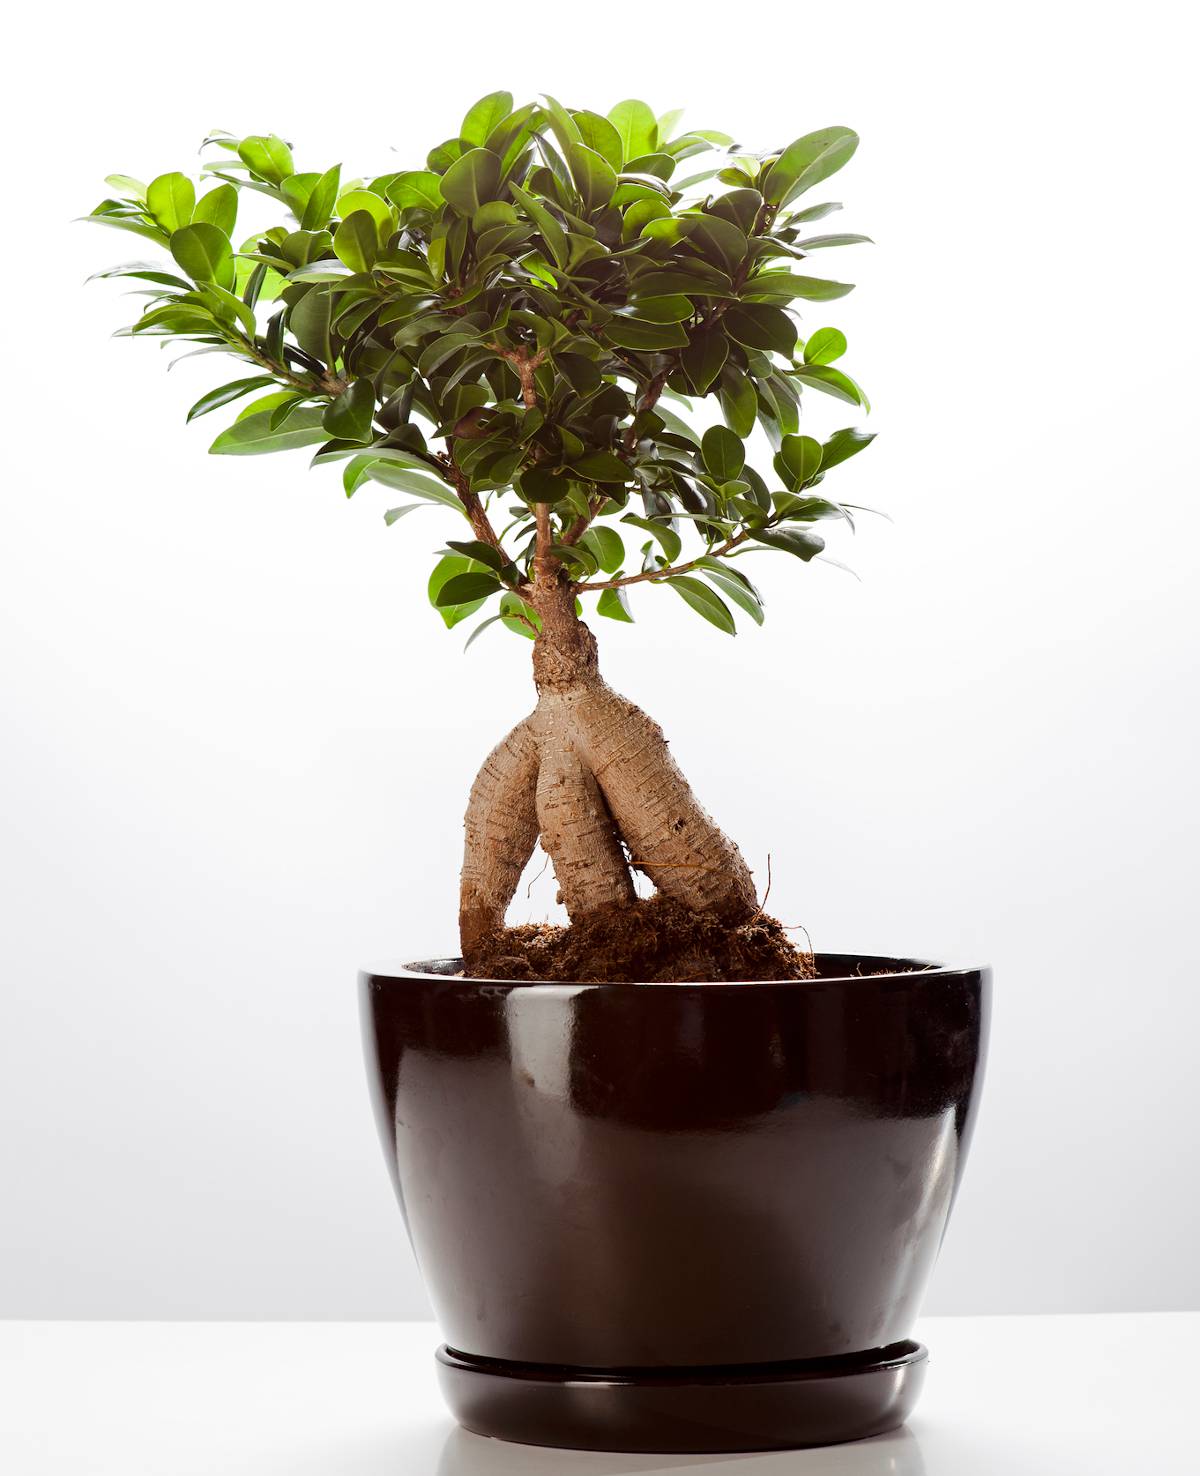 Cultiver et entretenir les bonsaïs